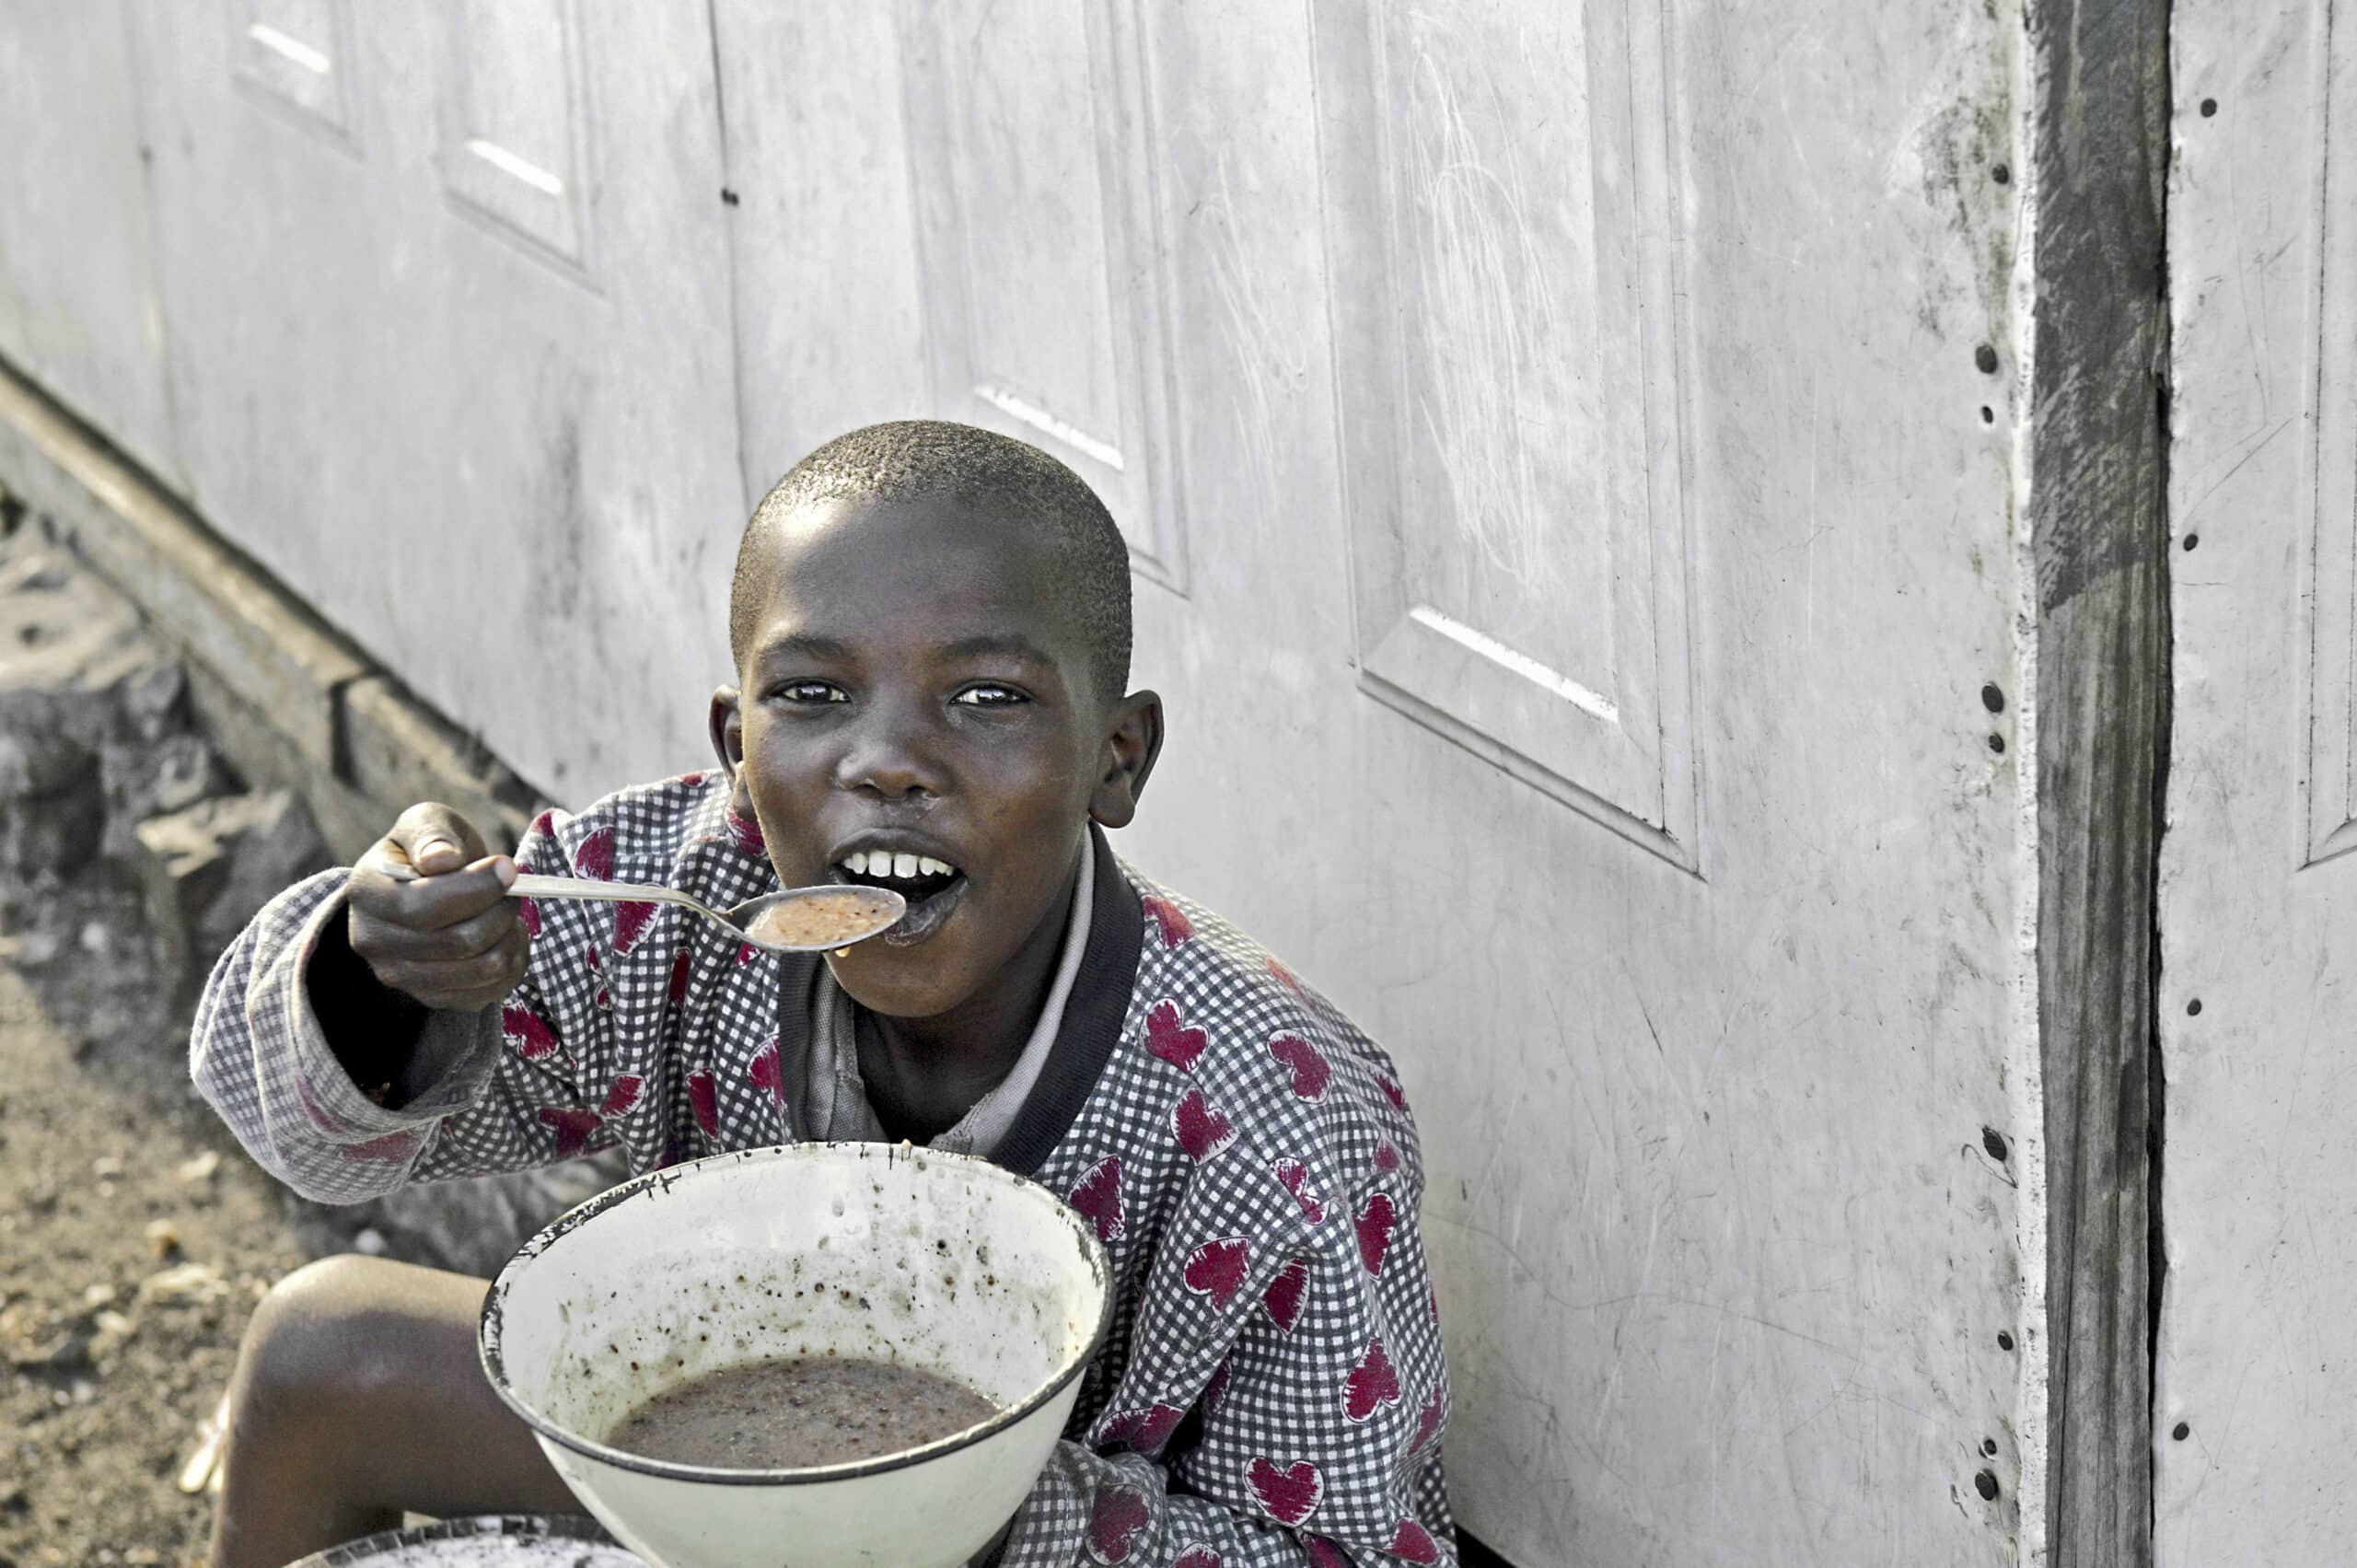 Ein kleiner Junge in einem rot gemusterten Hemd isst mit einem Löffel aus einer Schüssel und sitzt im Freien an einer grauen Wand. Sein Gesichtsausdruck ist zufrieden und er konzentriert sich auf sein Essen. © Fotografie Tomas Rodriguez